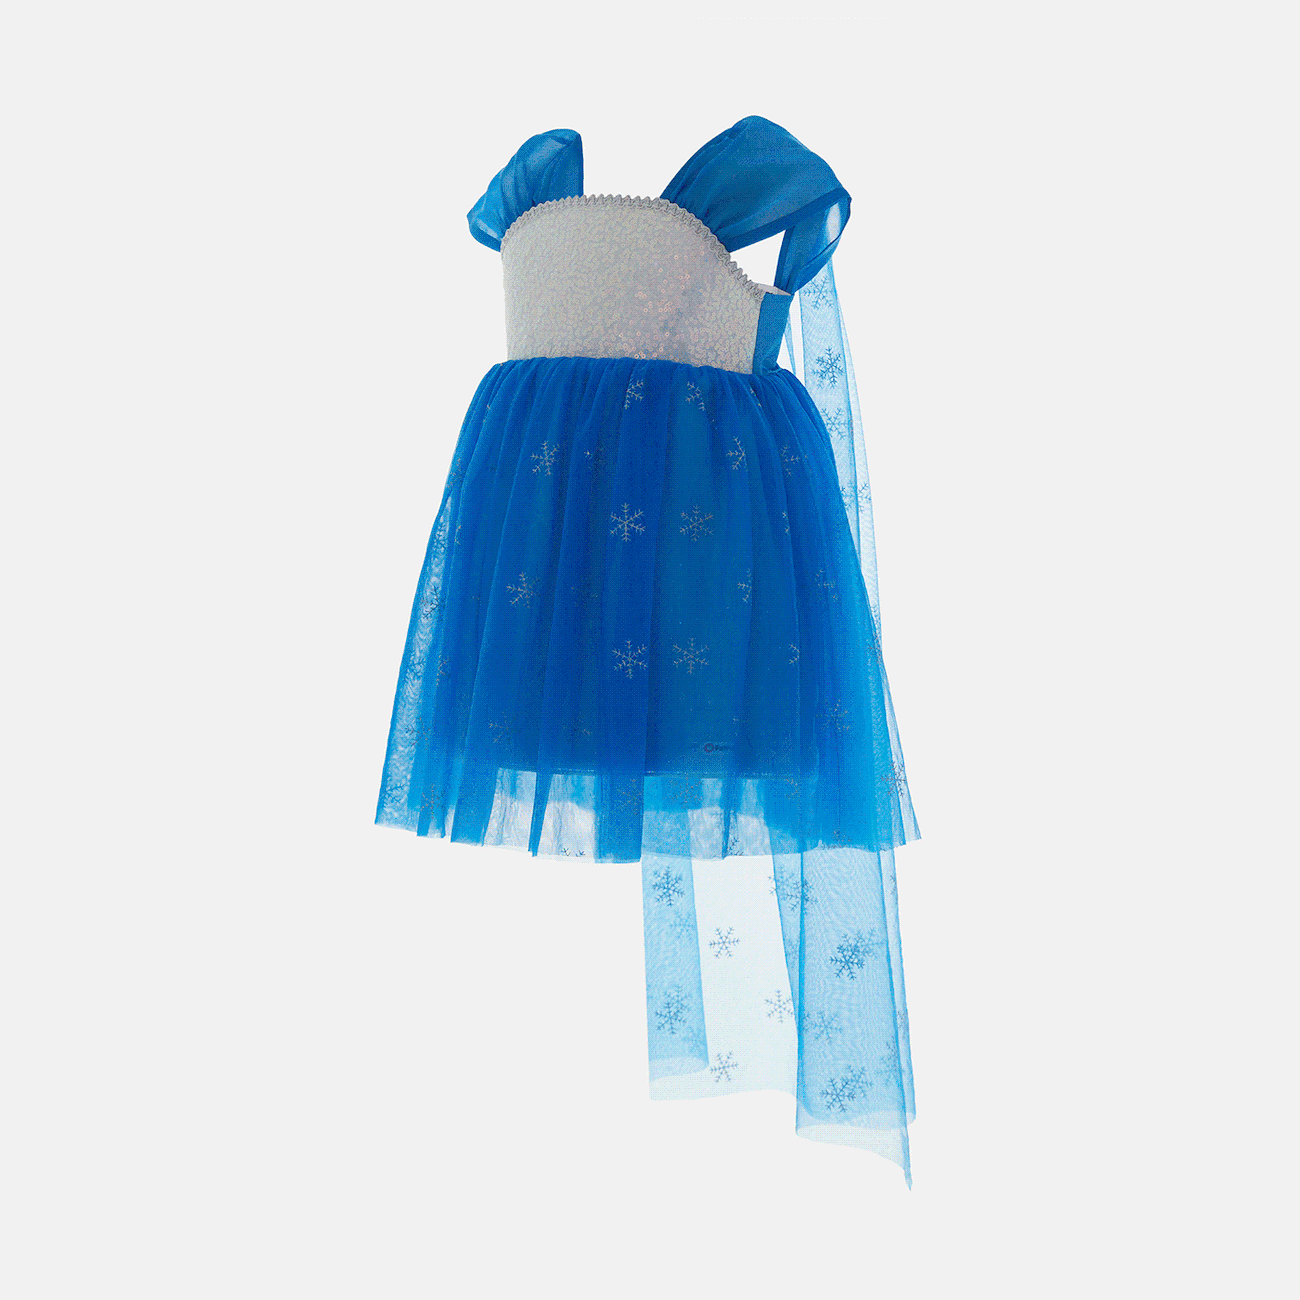 Go-Glow Light Up vestido de fiesta azul con brillo de copo de nieve de lentejuelas y capa extraíble incluyendo controlador (batería incorporada) Azul Oscuro / Blanco big image 1